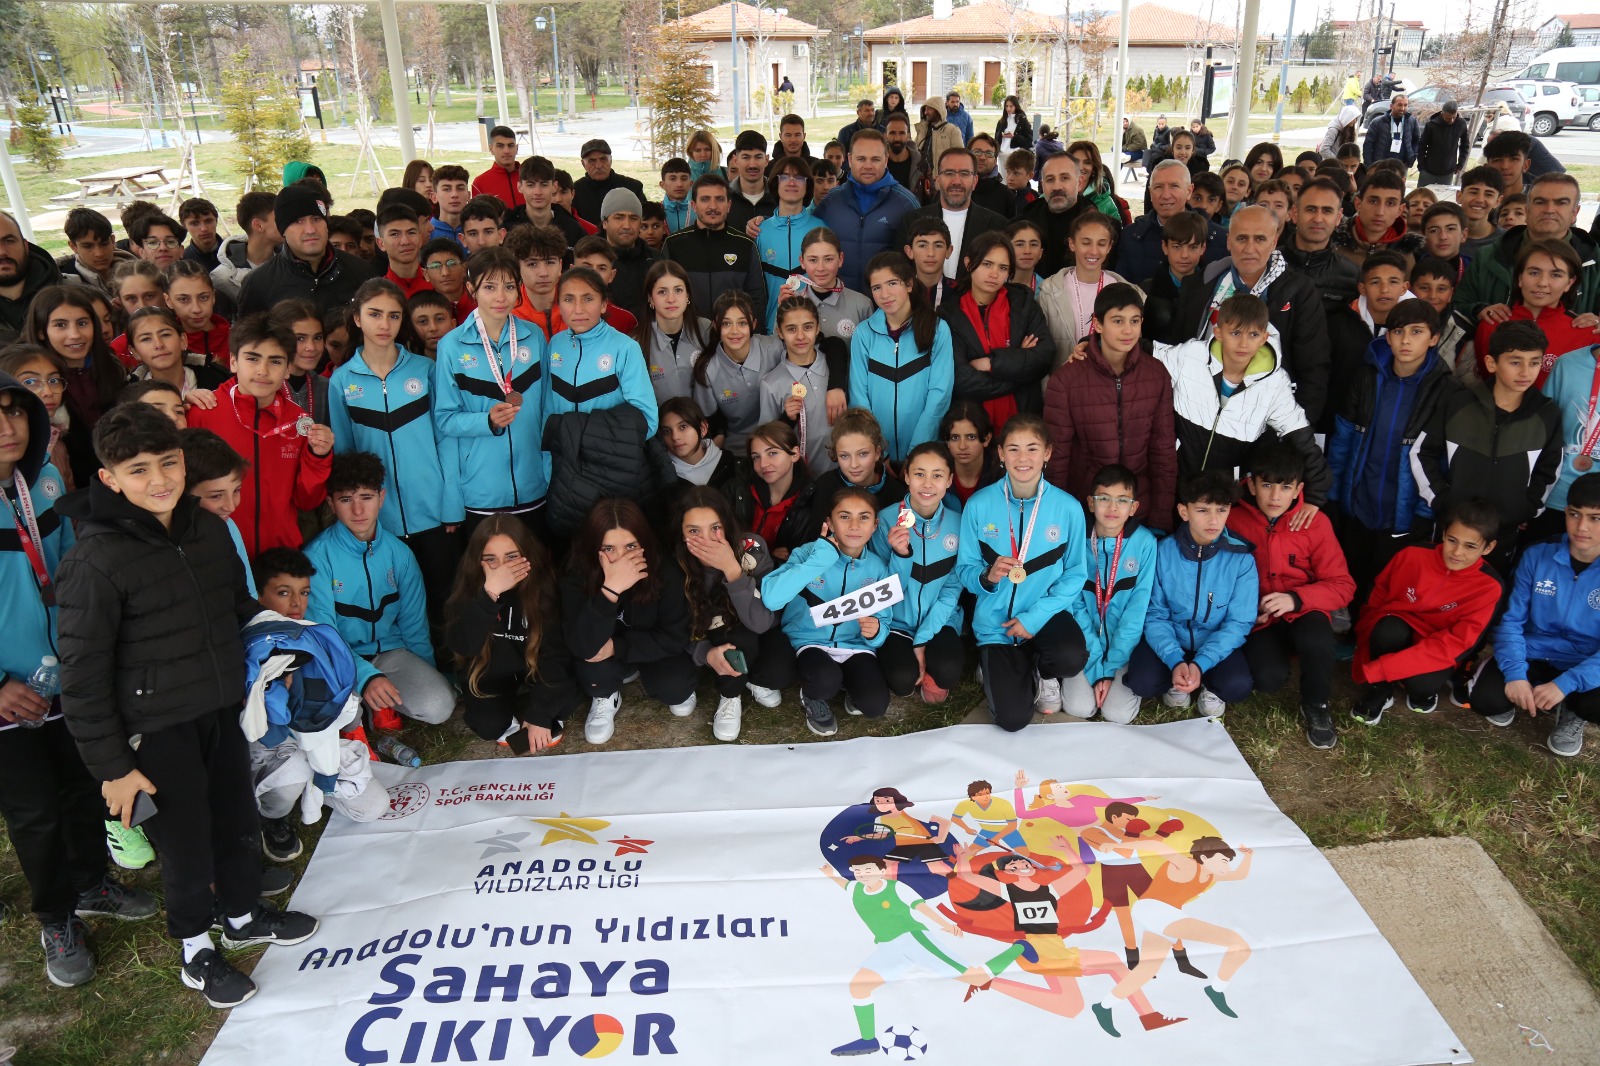 Atletizmi Geliştirme Projesi Kırıkkale Grubu